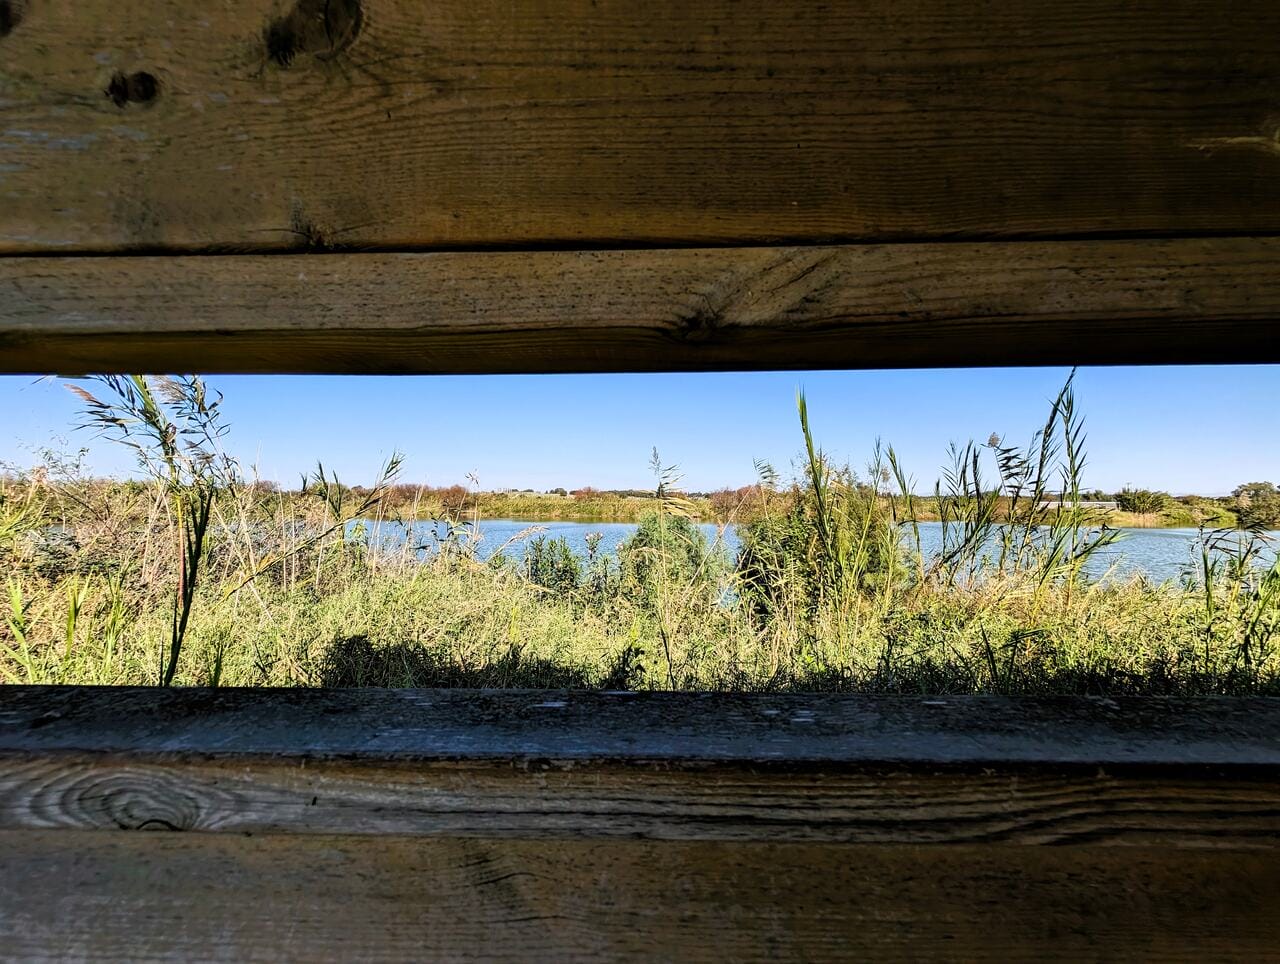 חלון אל אגמון חפר על נחל אלכסנדר, מחסה תצפית לעופות המים, צילום: ד"ר ענת אביטל